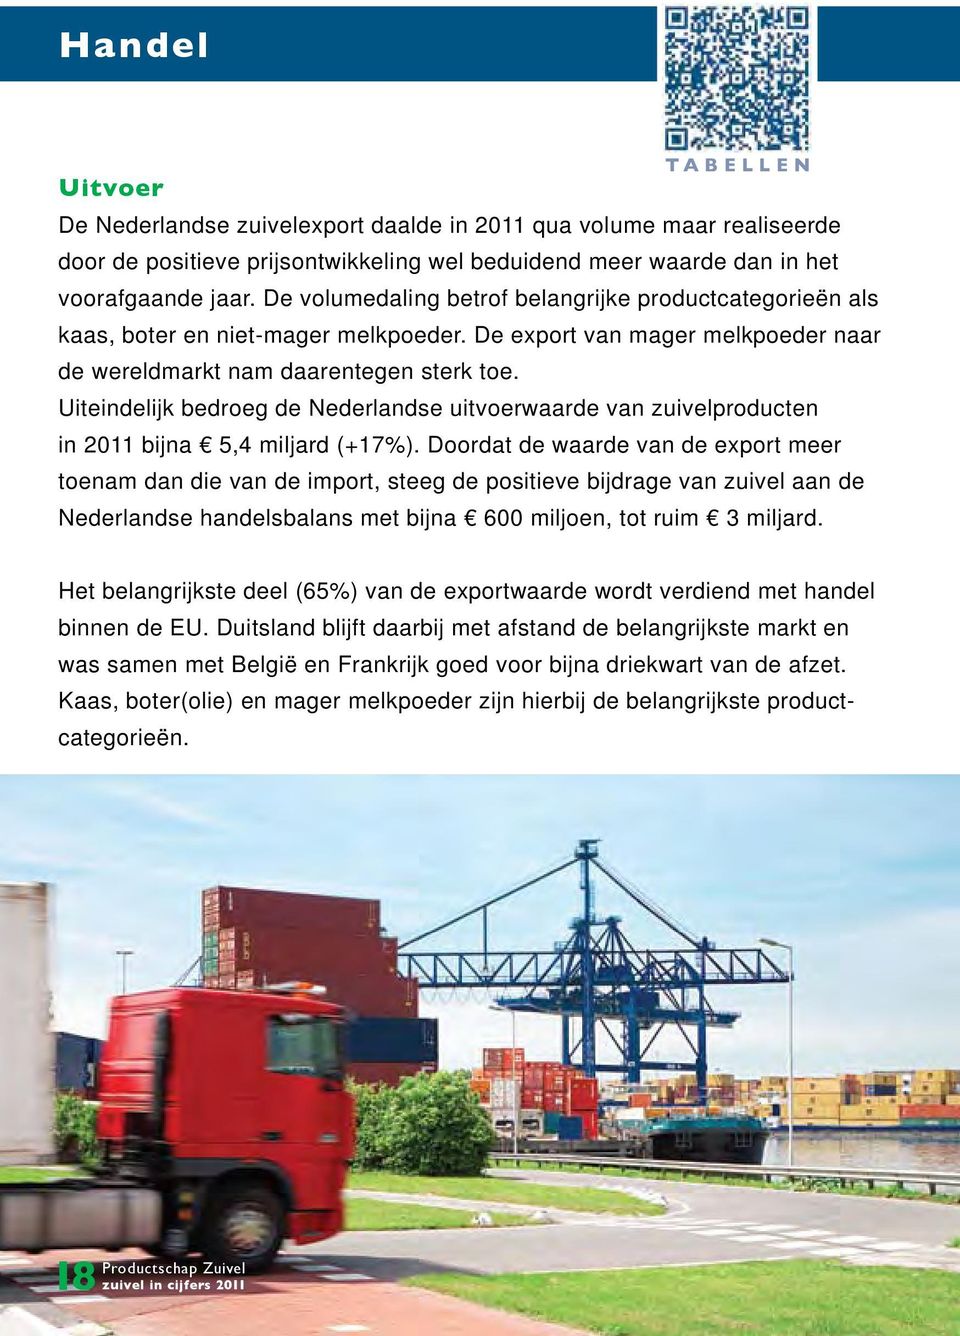 Uiteindelijk bedroeg de Nederlandse uitvoerwaarde van zuivelproducten in 2011 bijna 5,4 miljard (+17%).